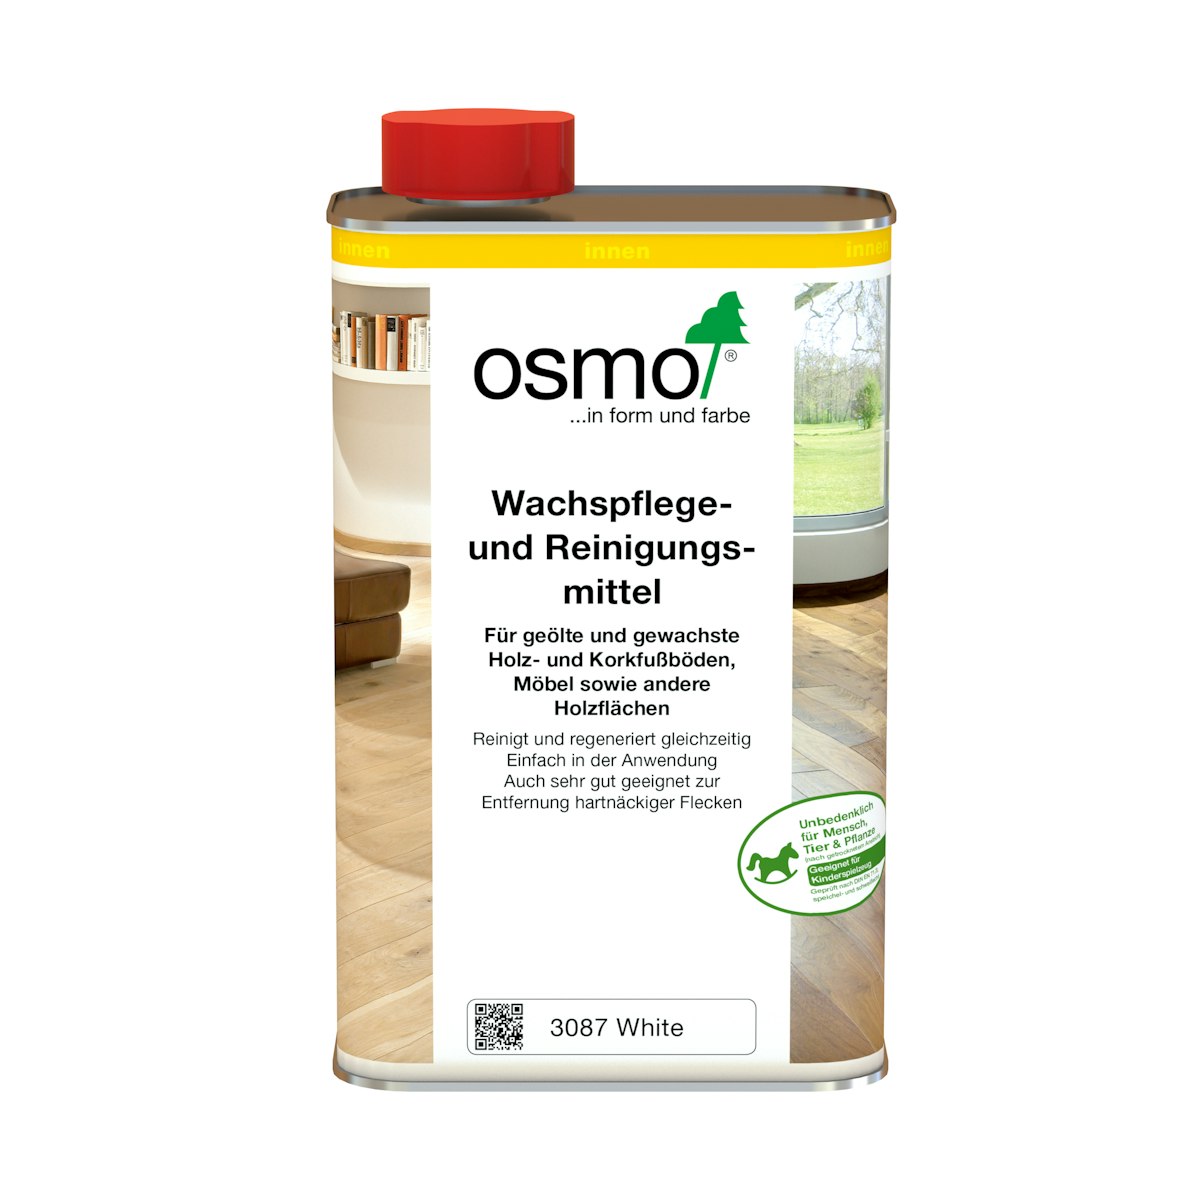 OSMO Wachspflege- und Reinigungsmittel -3029 Farblos-25 Liter von Osmo Farben & Zubehör